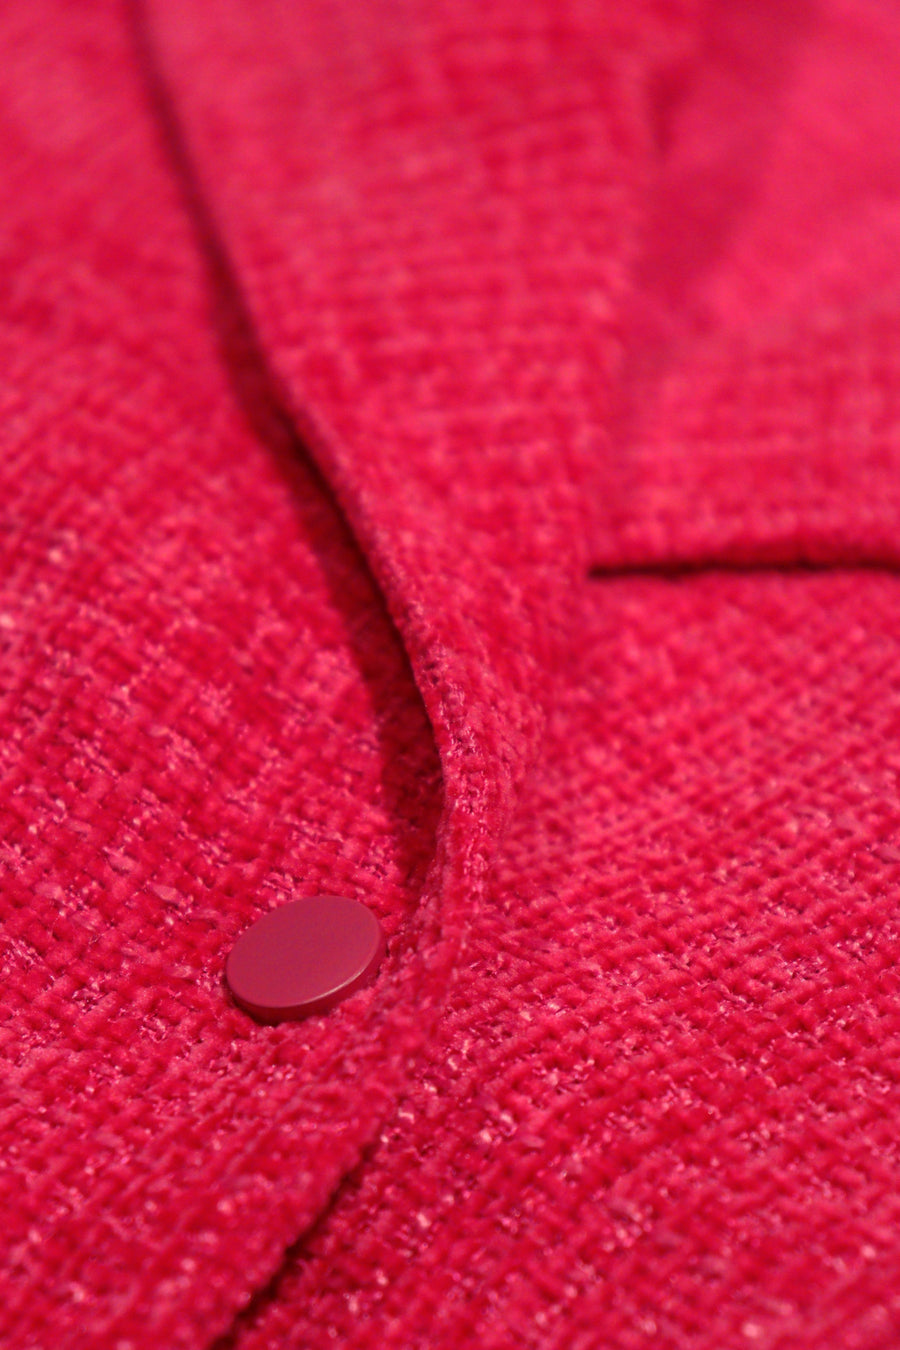 Jacket Elexis | Pink